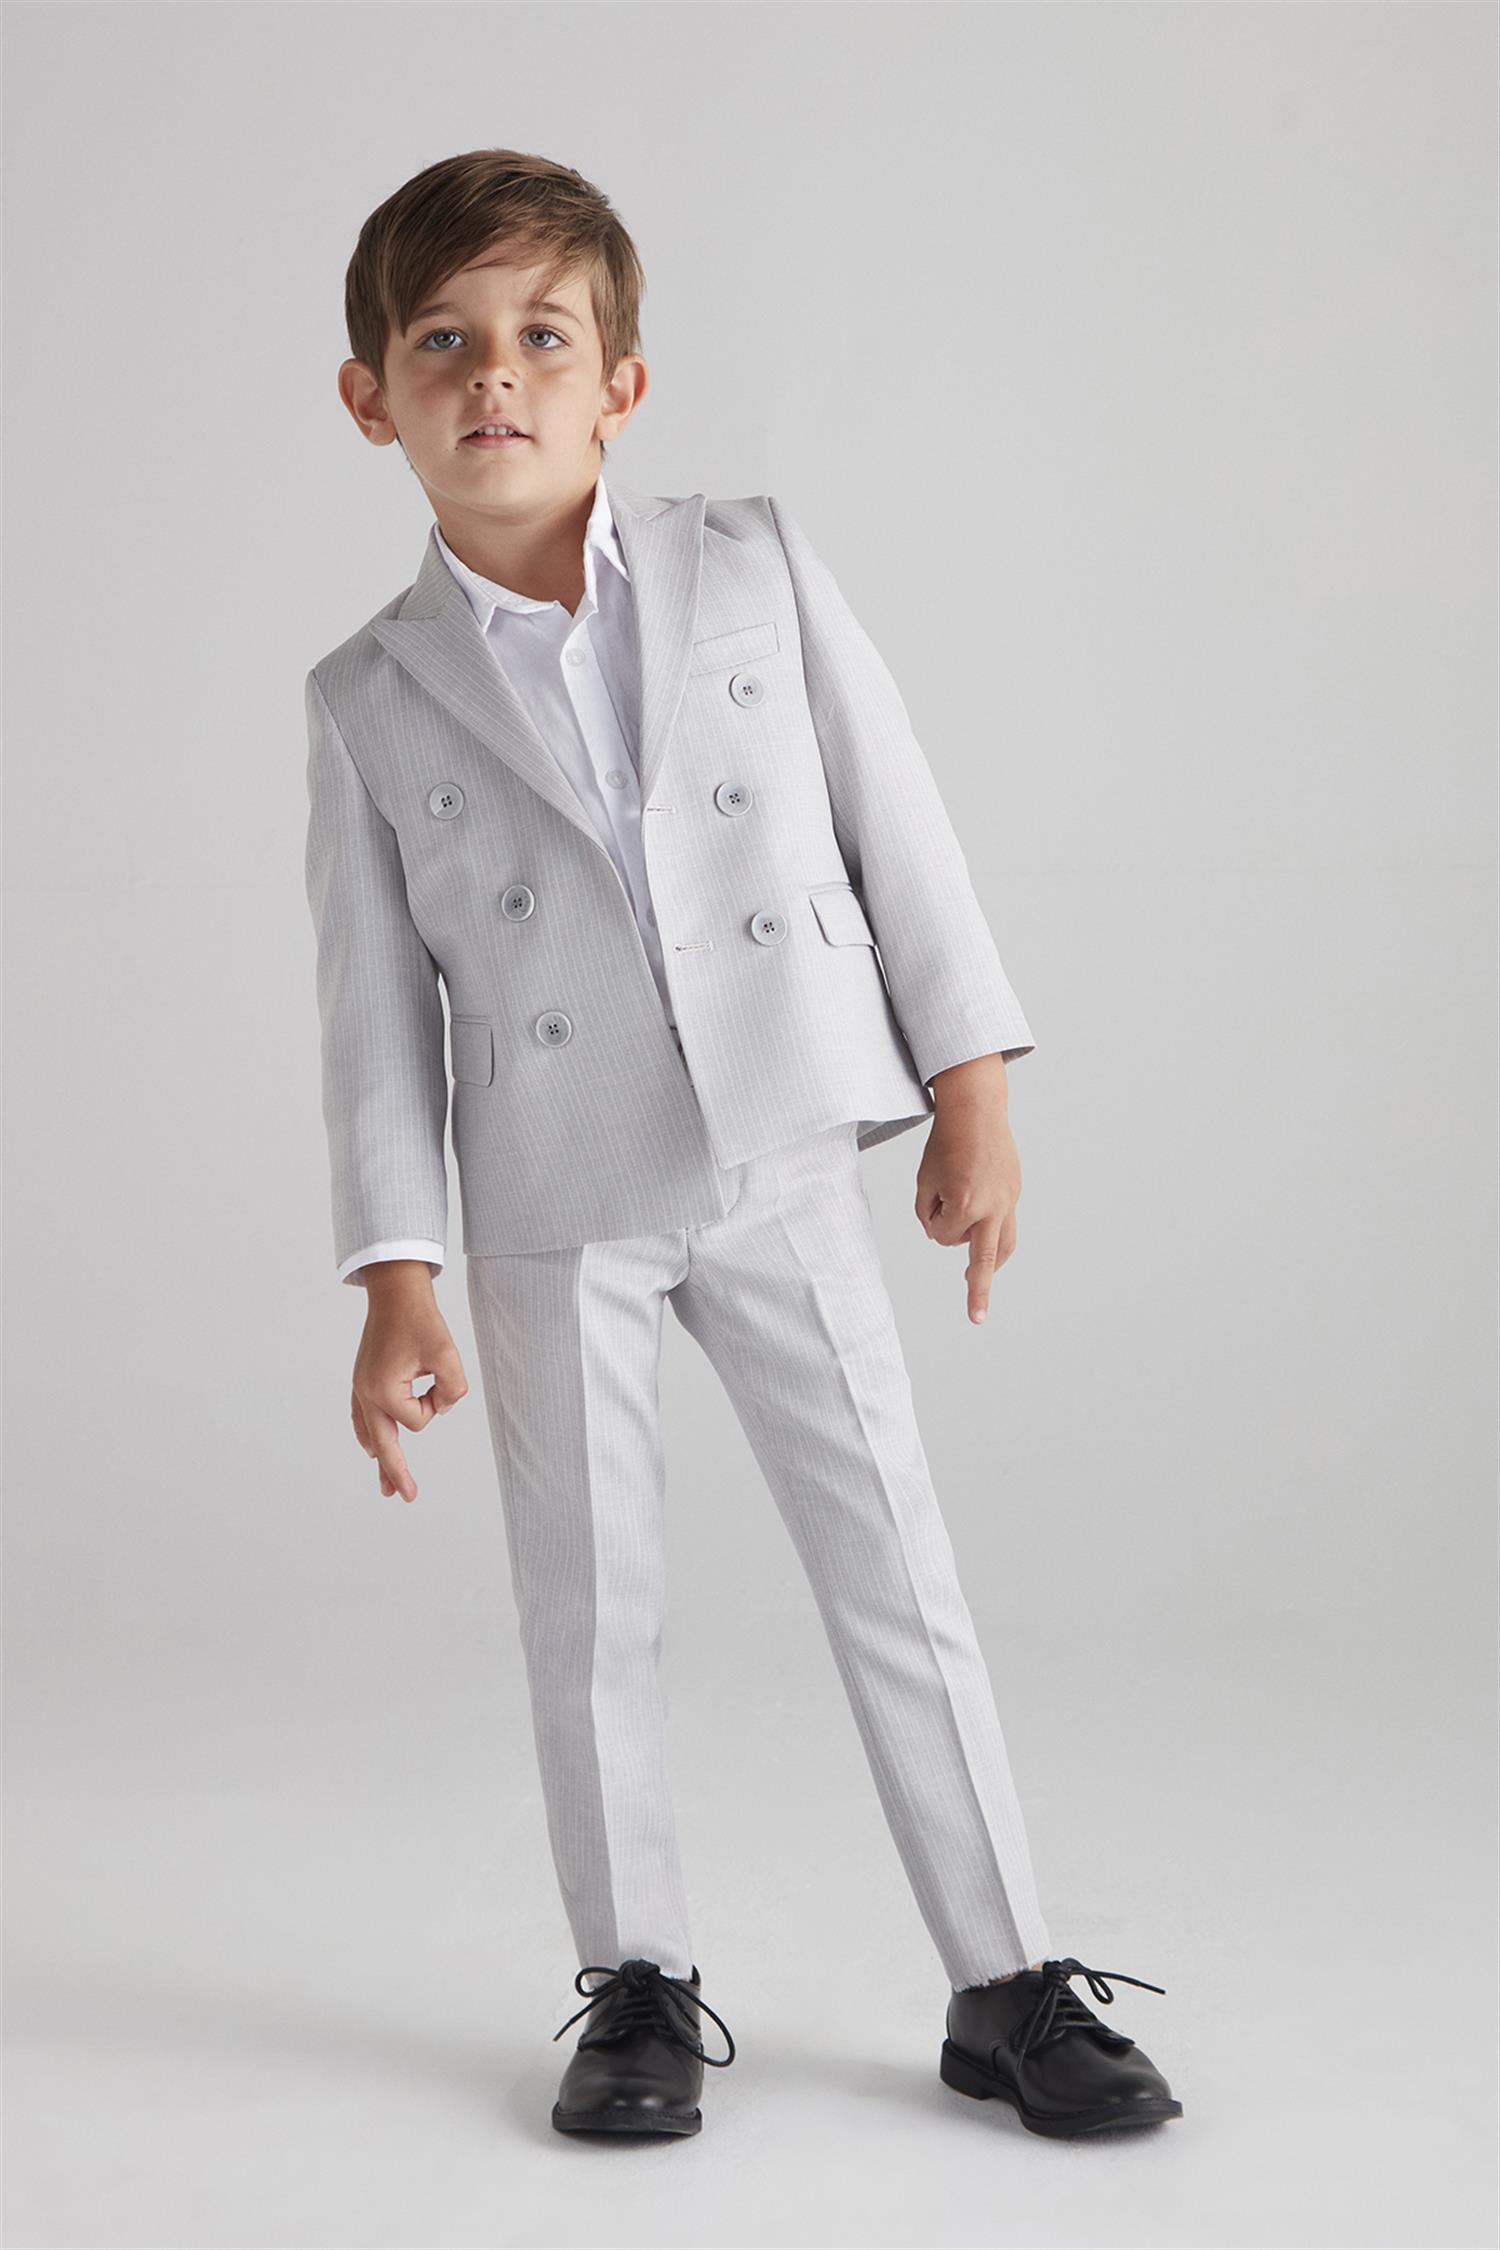 hoQuspoQus Erkek Çocuk Kruvaze Çizgili Takım Elbise (Gri) - Üçlü Takım ( Pantolon,Gömlek,Ceket)